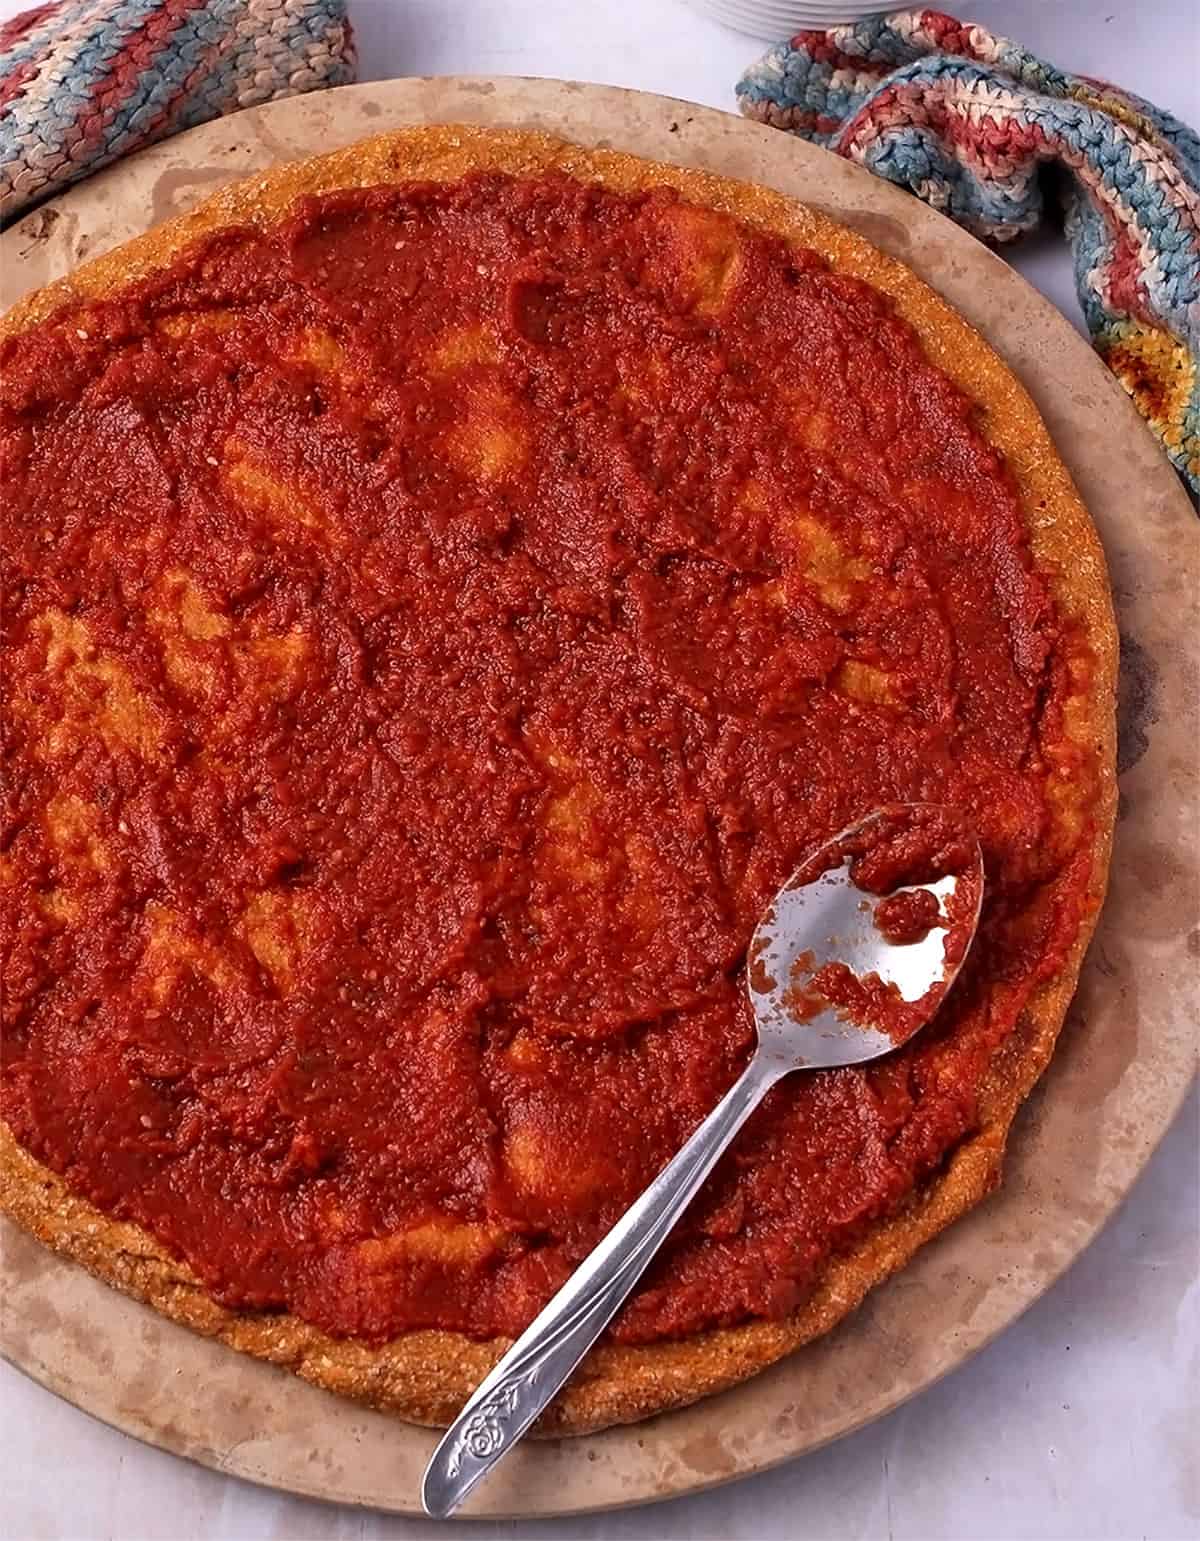 Tomato sauce is spread on a vegan sweet potato pizza crust.